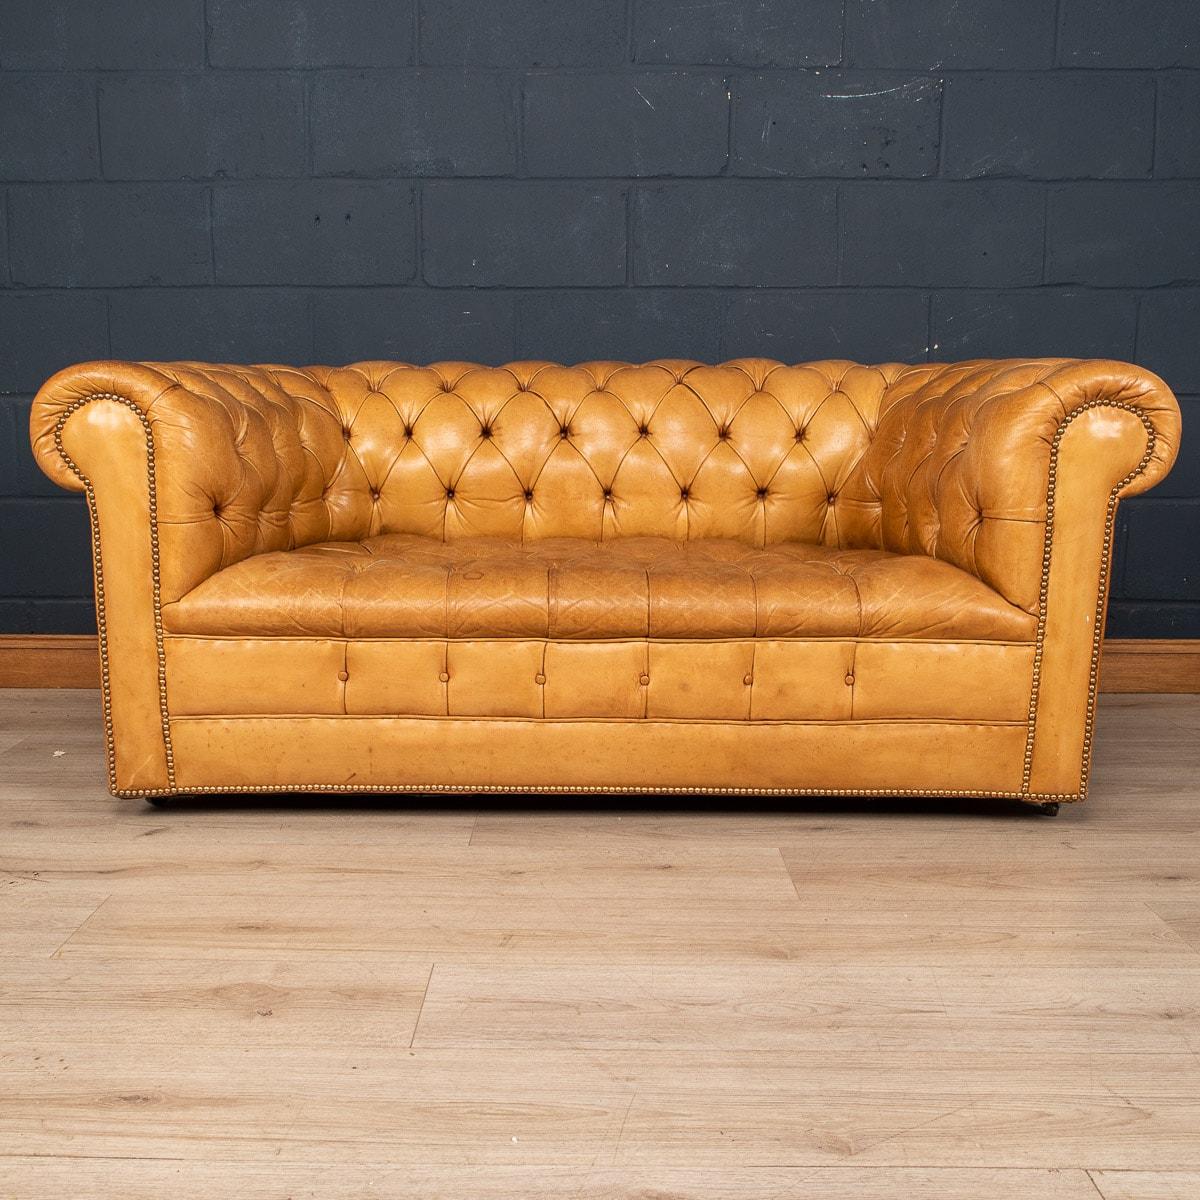 Eine hervorragende Mitte des 20. Jahrhunderts Leder Chesterfield Sofa. Als eines der elegantesten Modelle mit Button-Down-Sitzfläche ist es ein modisches Möbelstück, das den Innenraum eines jeden modernen oder traditionellen Hauses aufwertet. Die